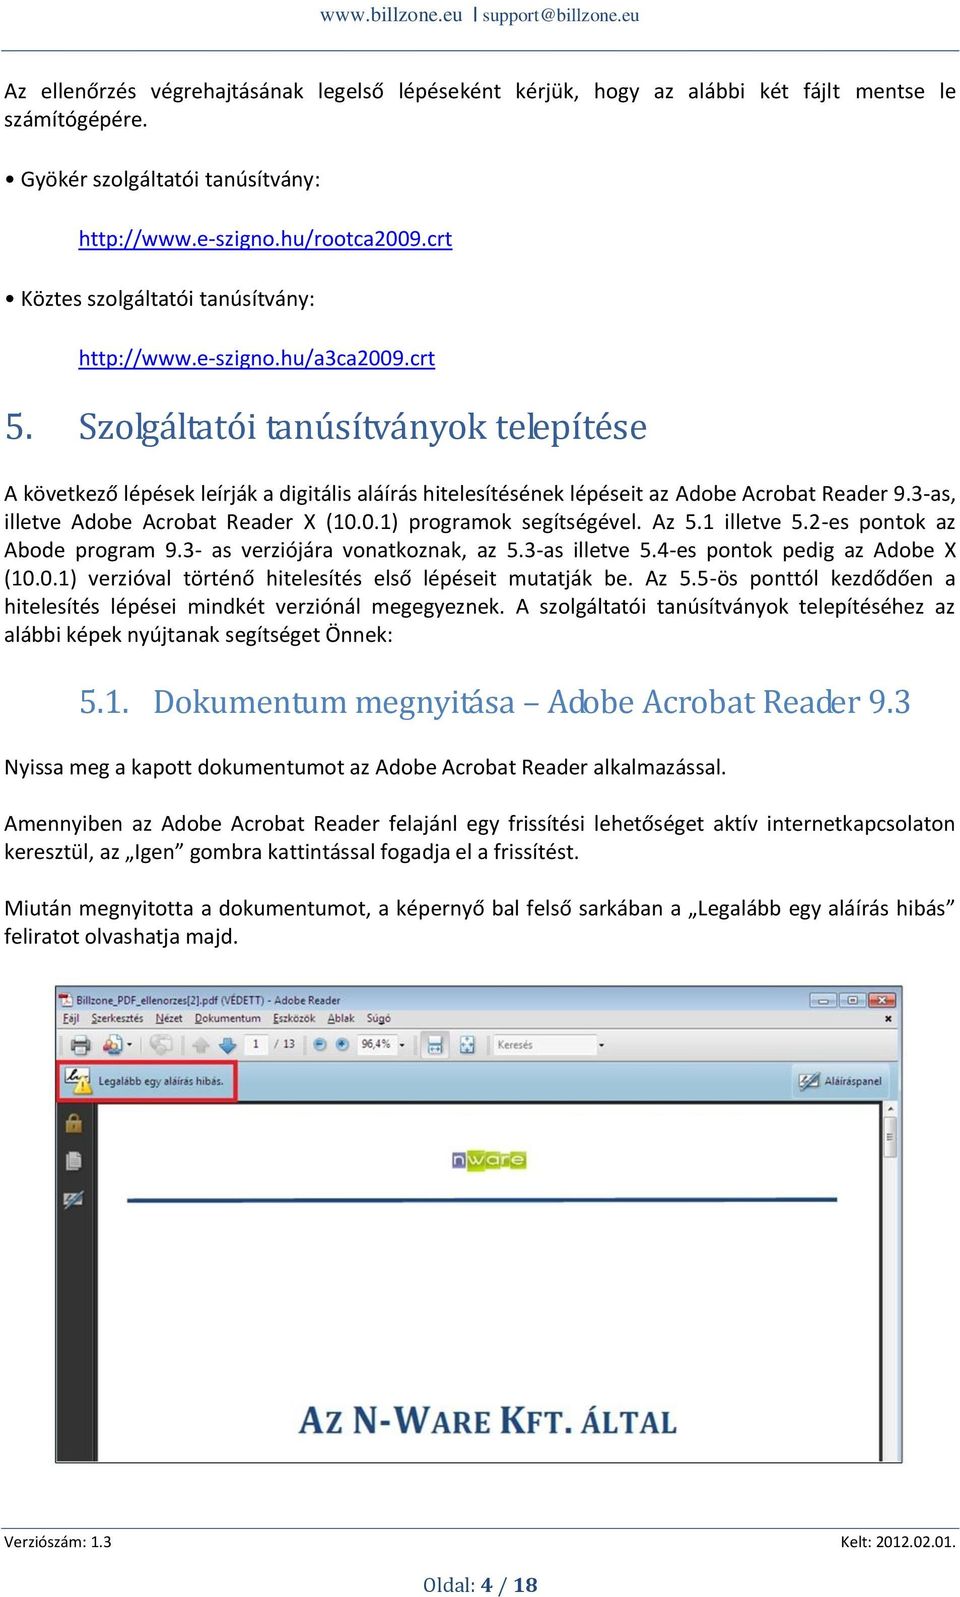 Szolgáltatói tanúsítványok telepítése A következő lépések leírják a digitális aláírás hitelesítésének lépéseit az Adobe Acrobat Reader 9.3-as, illetve Adobe Acrobat Reader X (10.